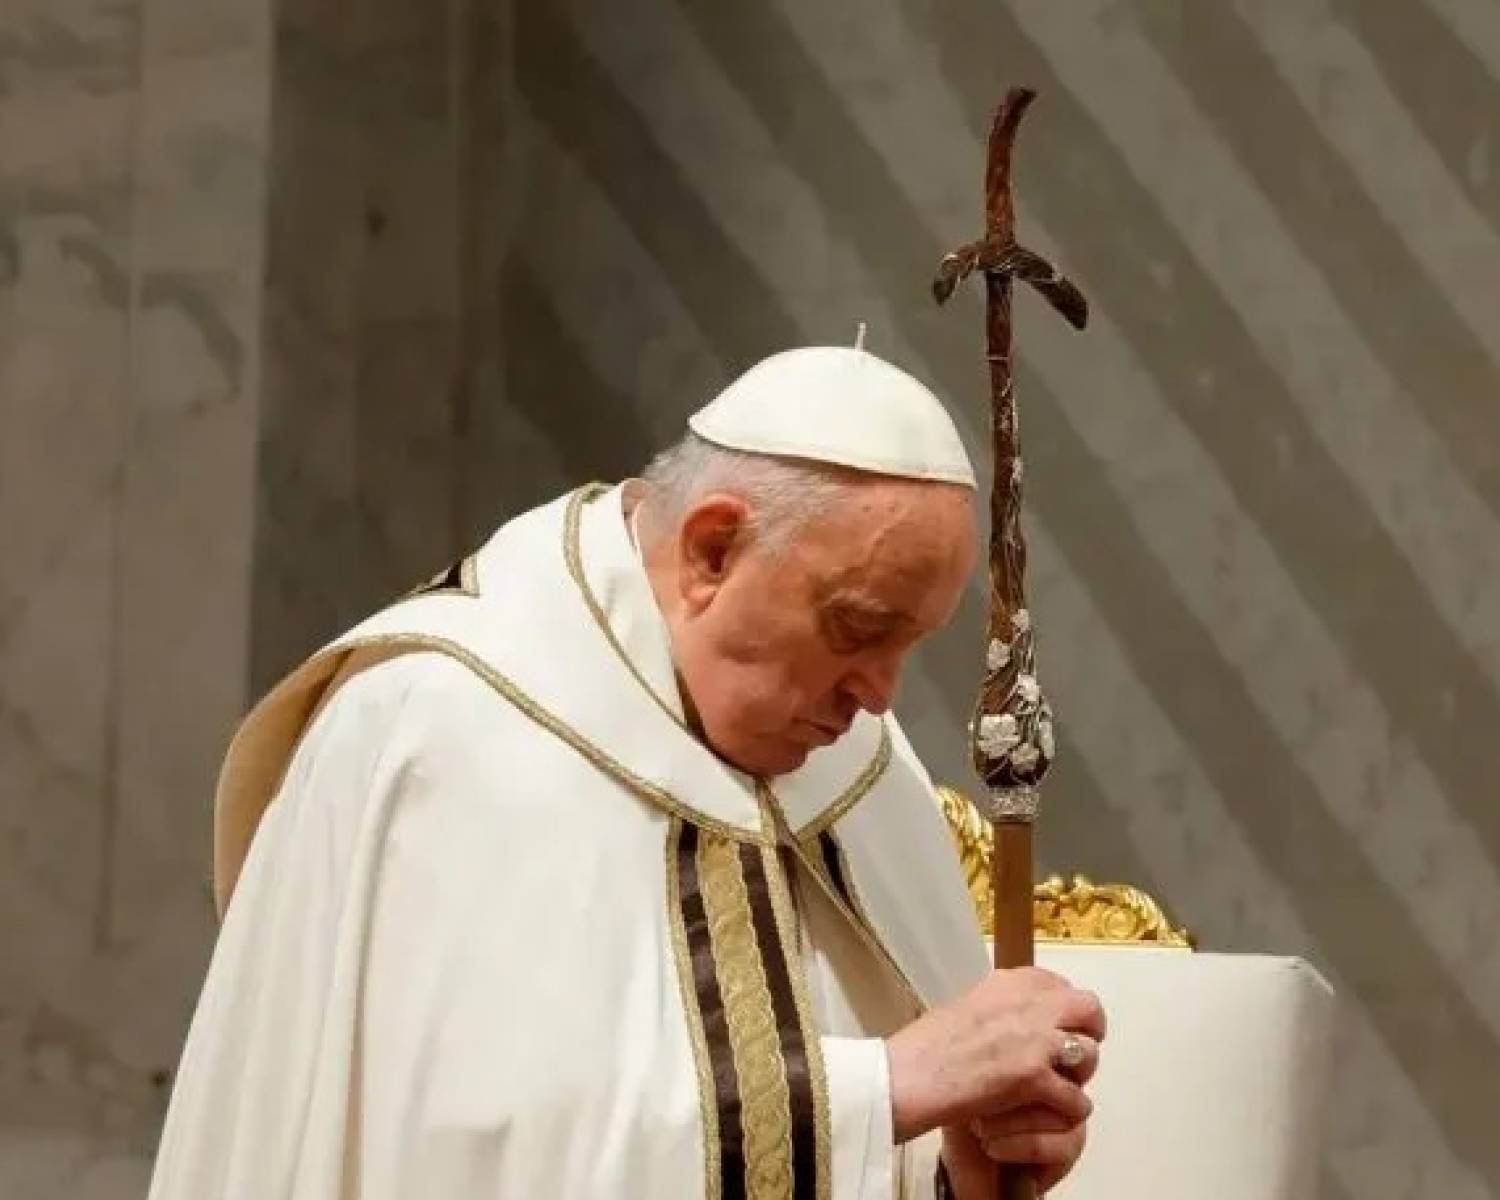 El papa Francisco decidió no participar del tradicional Vía Crucis